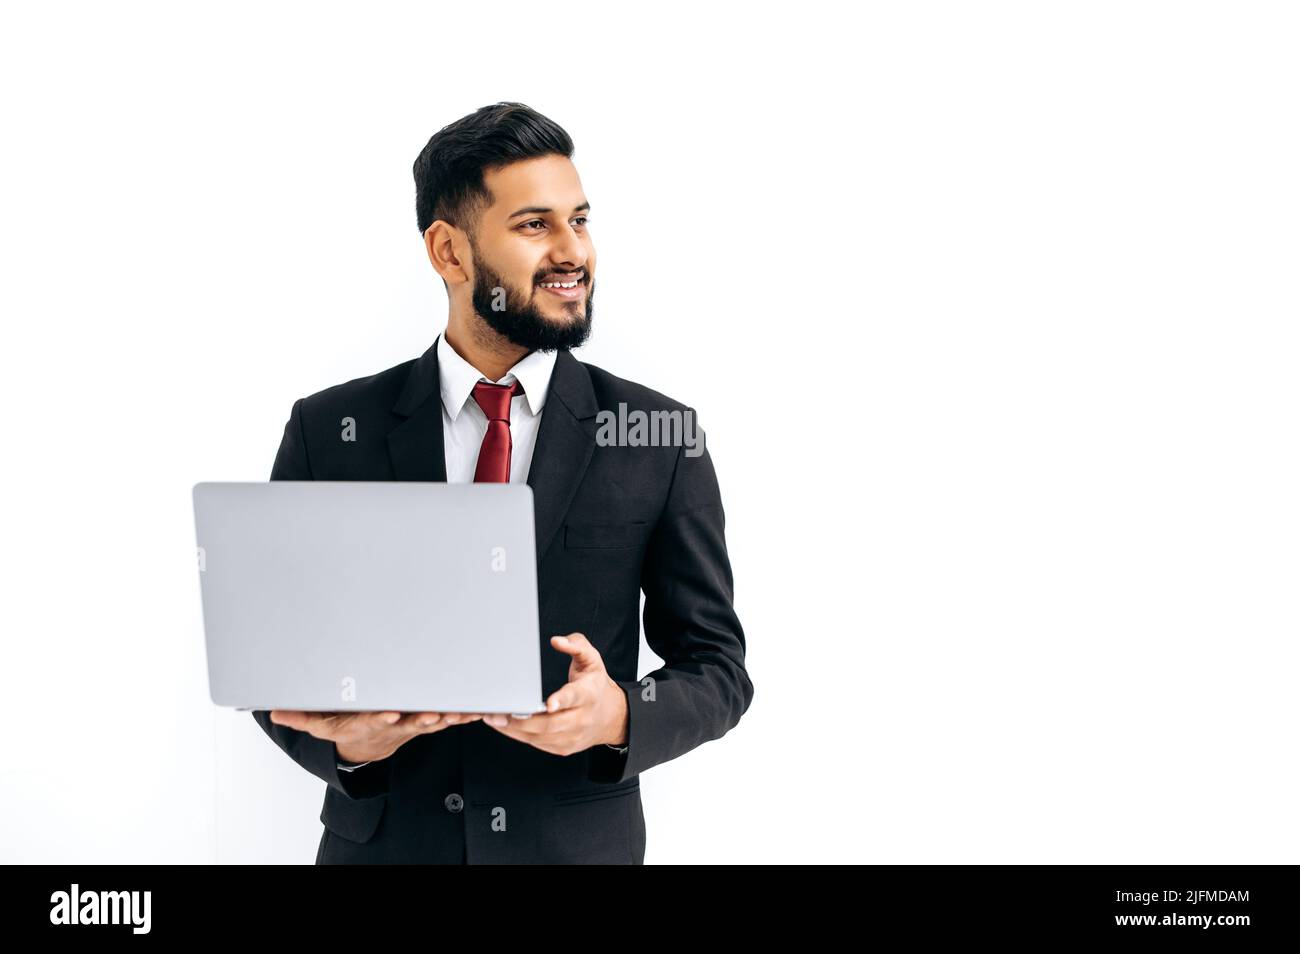 Positiv schöner eleganter indischer oder arabischer junger Mann im Business-Anzug, männlicher Manager, mit offenem Laptop in den Händen, zur Seite schauend, auf isoliertem weißen Hintergrund stehend, lächelnd freundlich. Speicherplatz kopieren Stockfoto